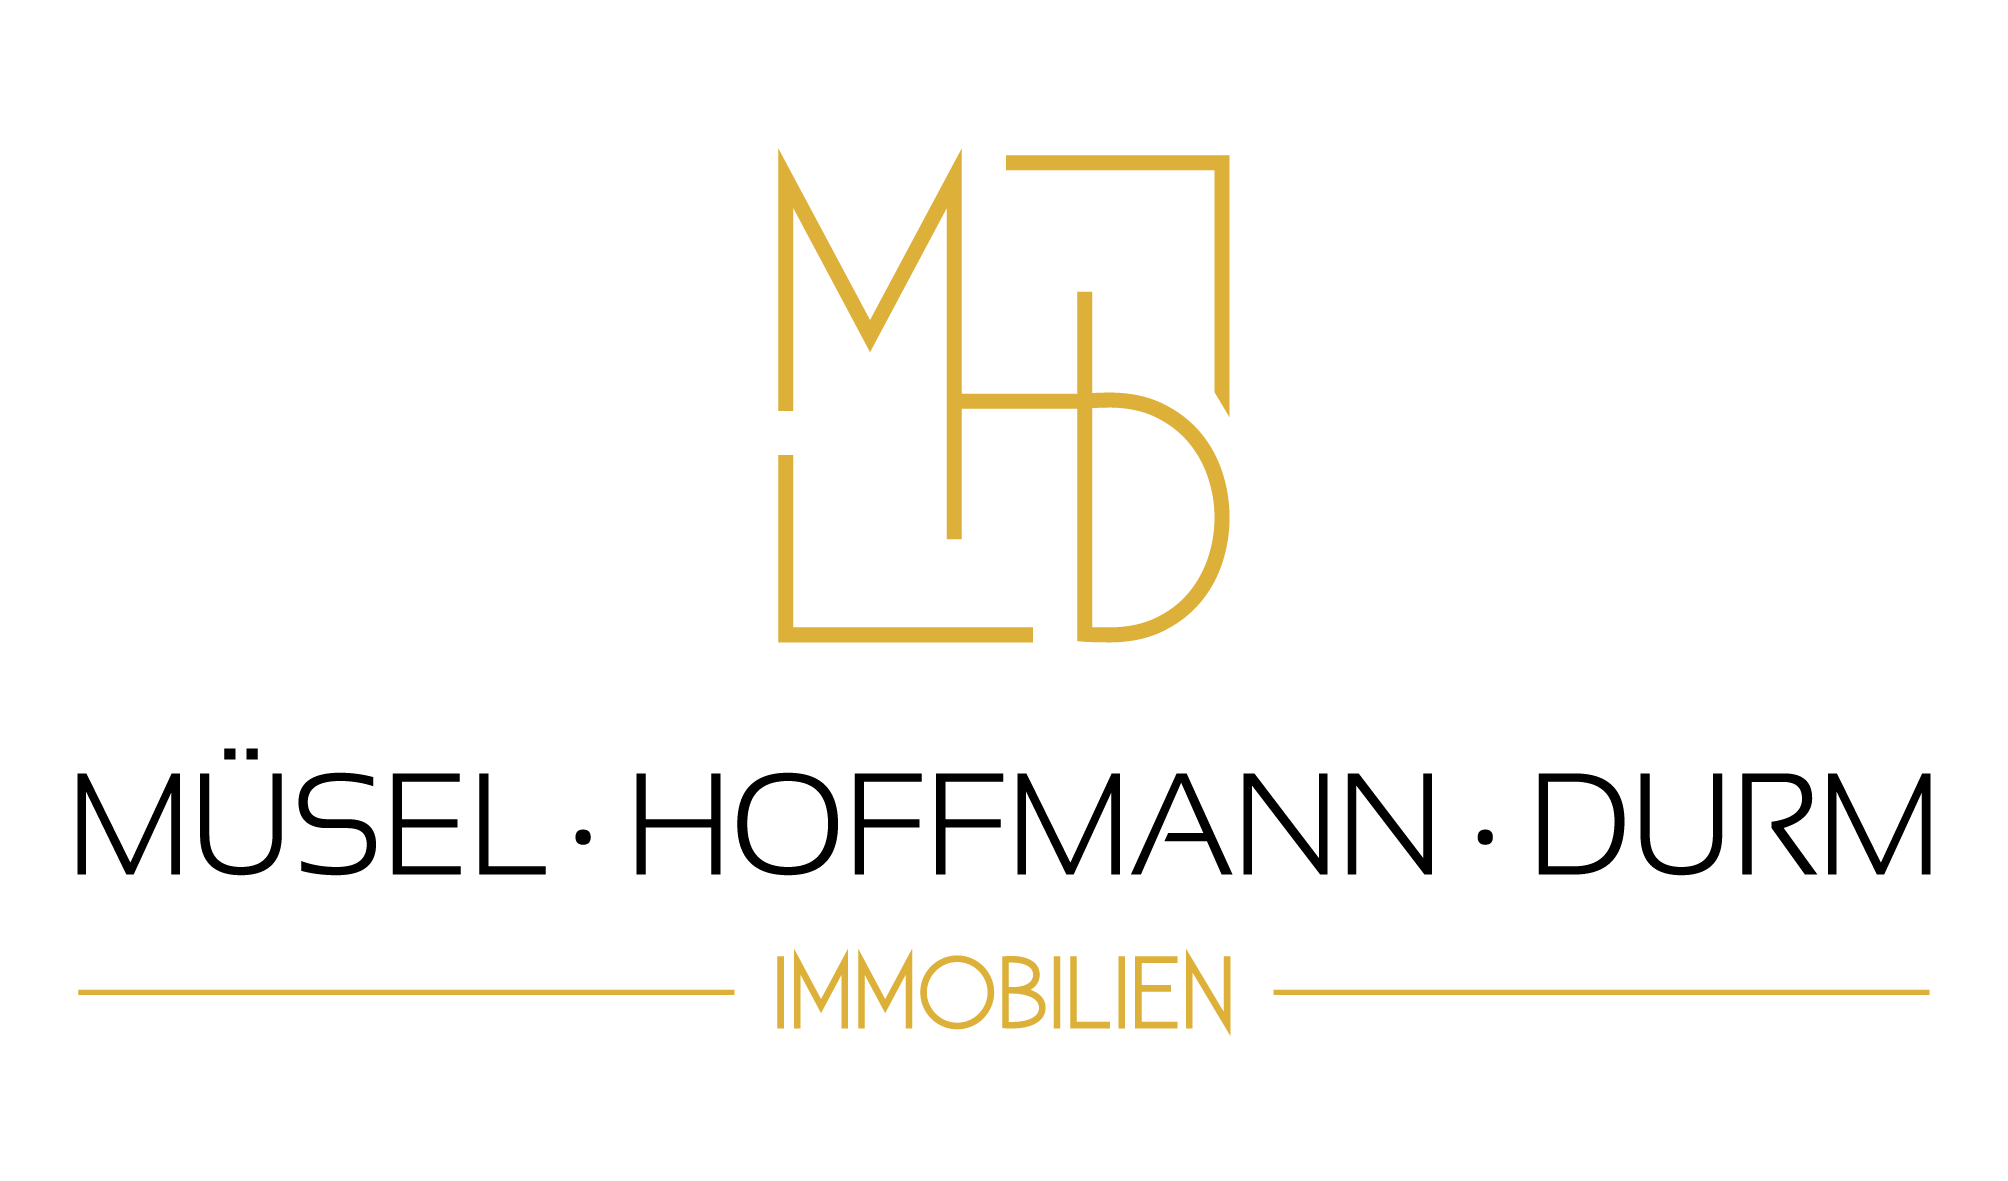 Müsel Hoffman Durm Immobilien logo